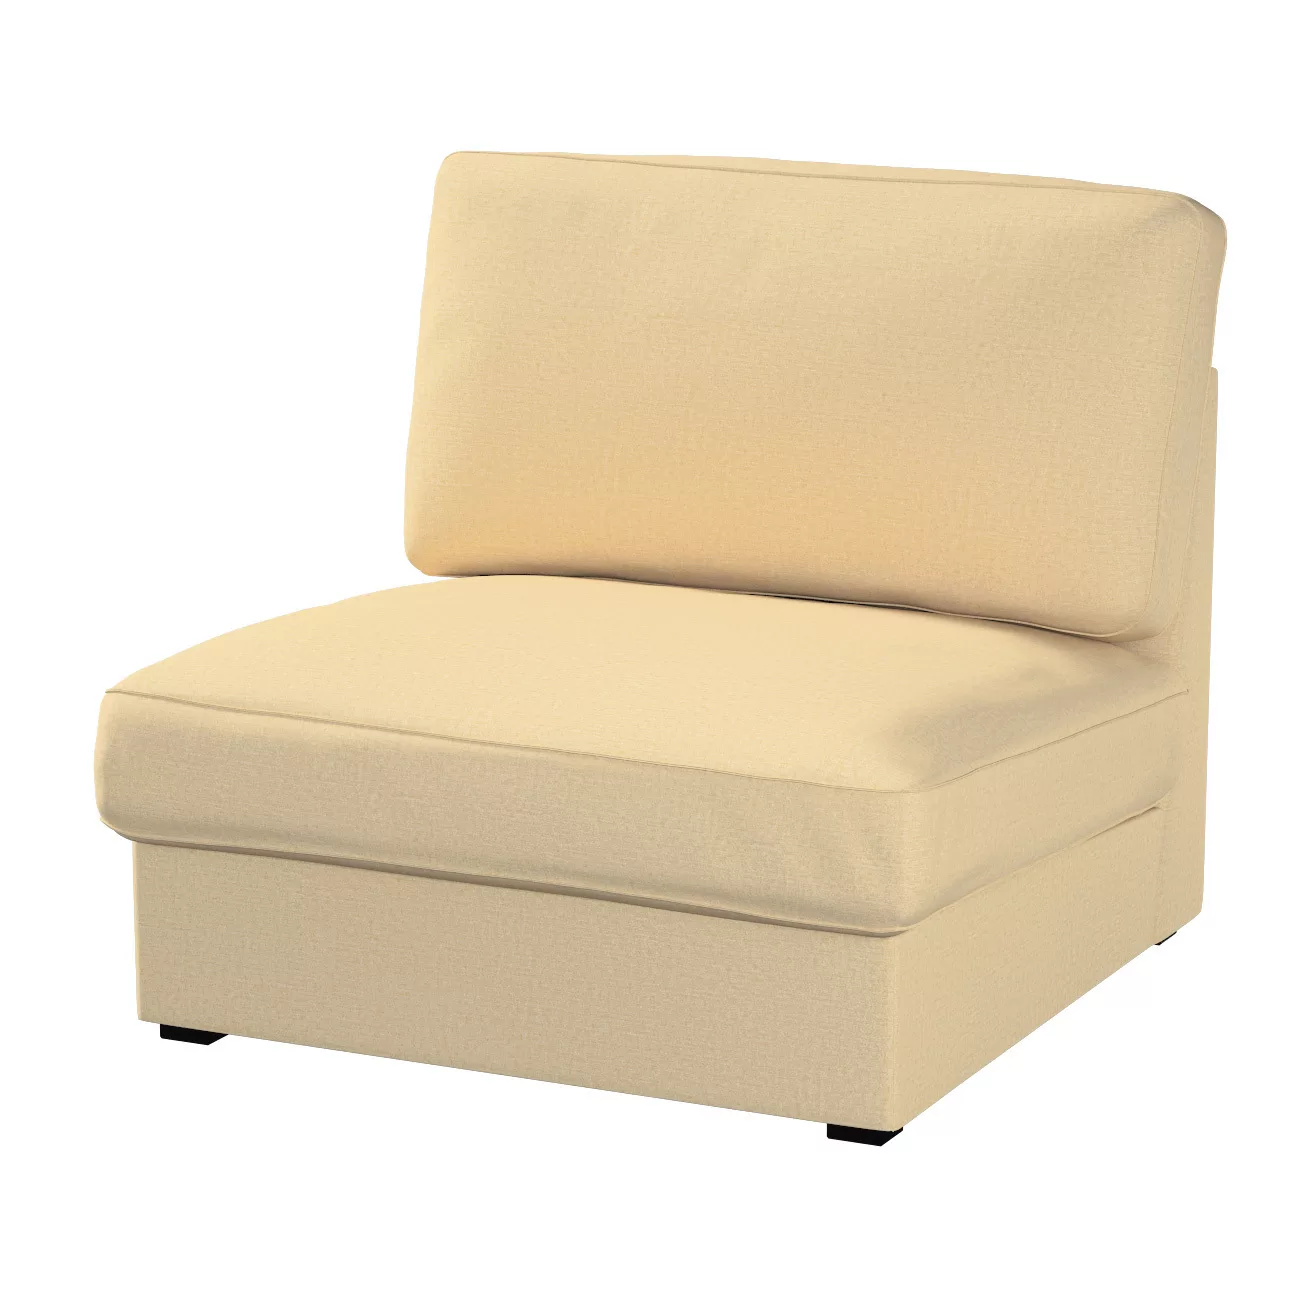 Bezug für Kivik Sessel nicht ausklappbar, sandfarben, Bezug für Sessel Kivi günstig online kaufen